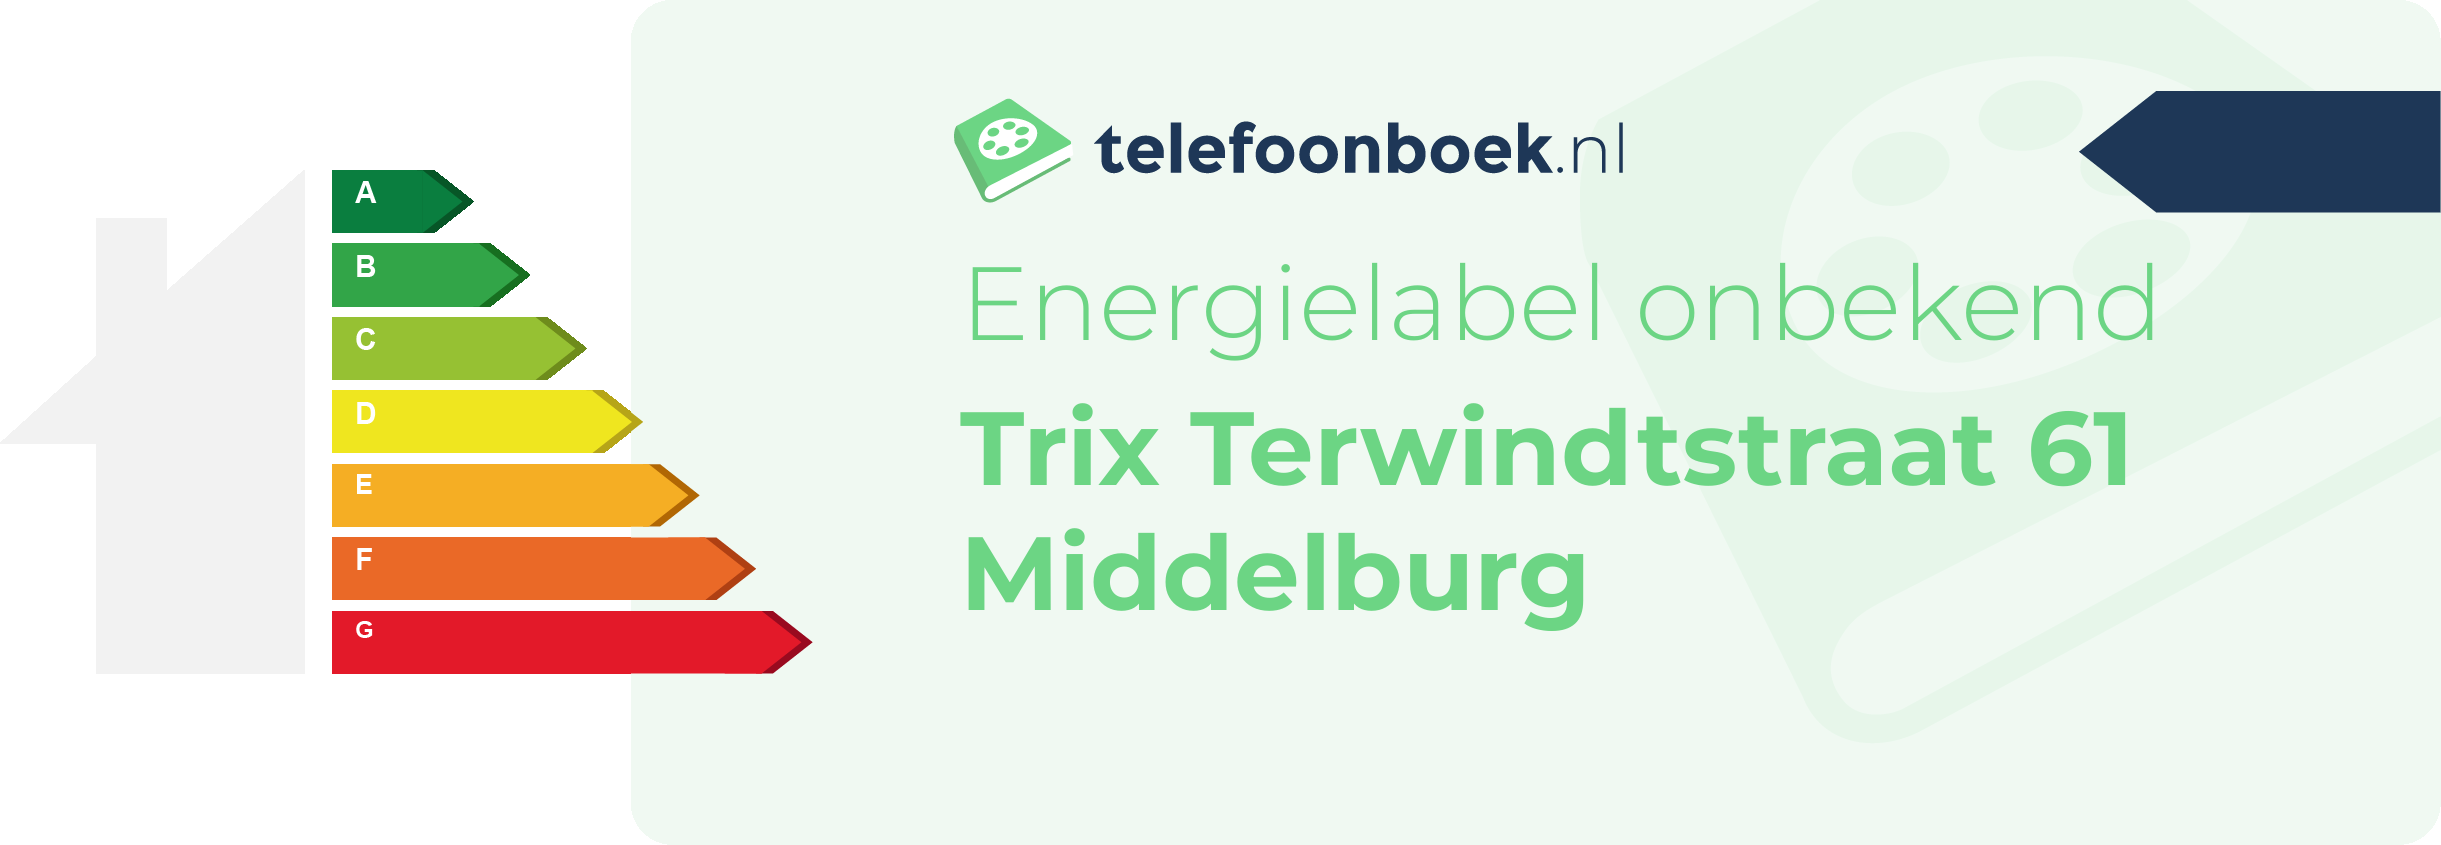 Energielabel Trix Terwindtstraat 61 Middelburg